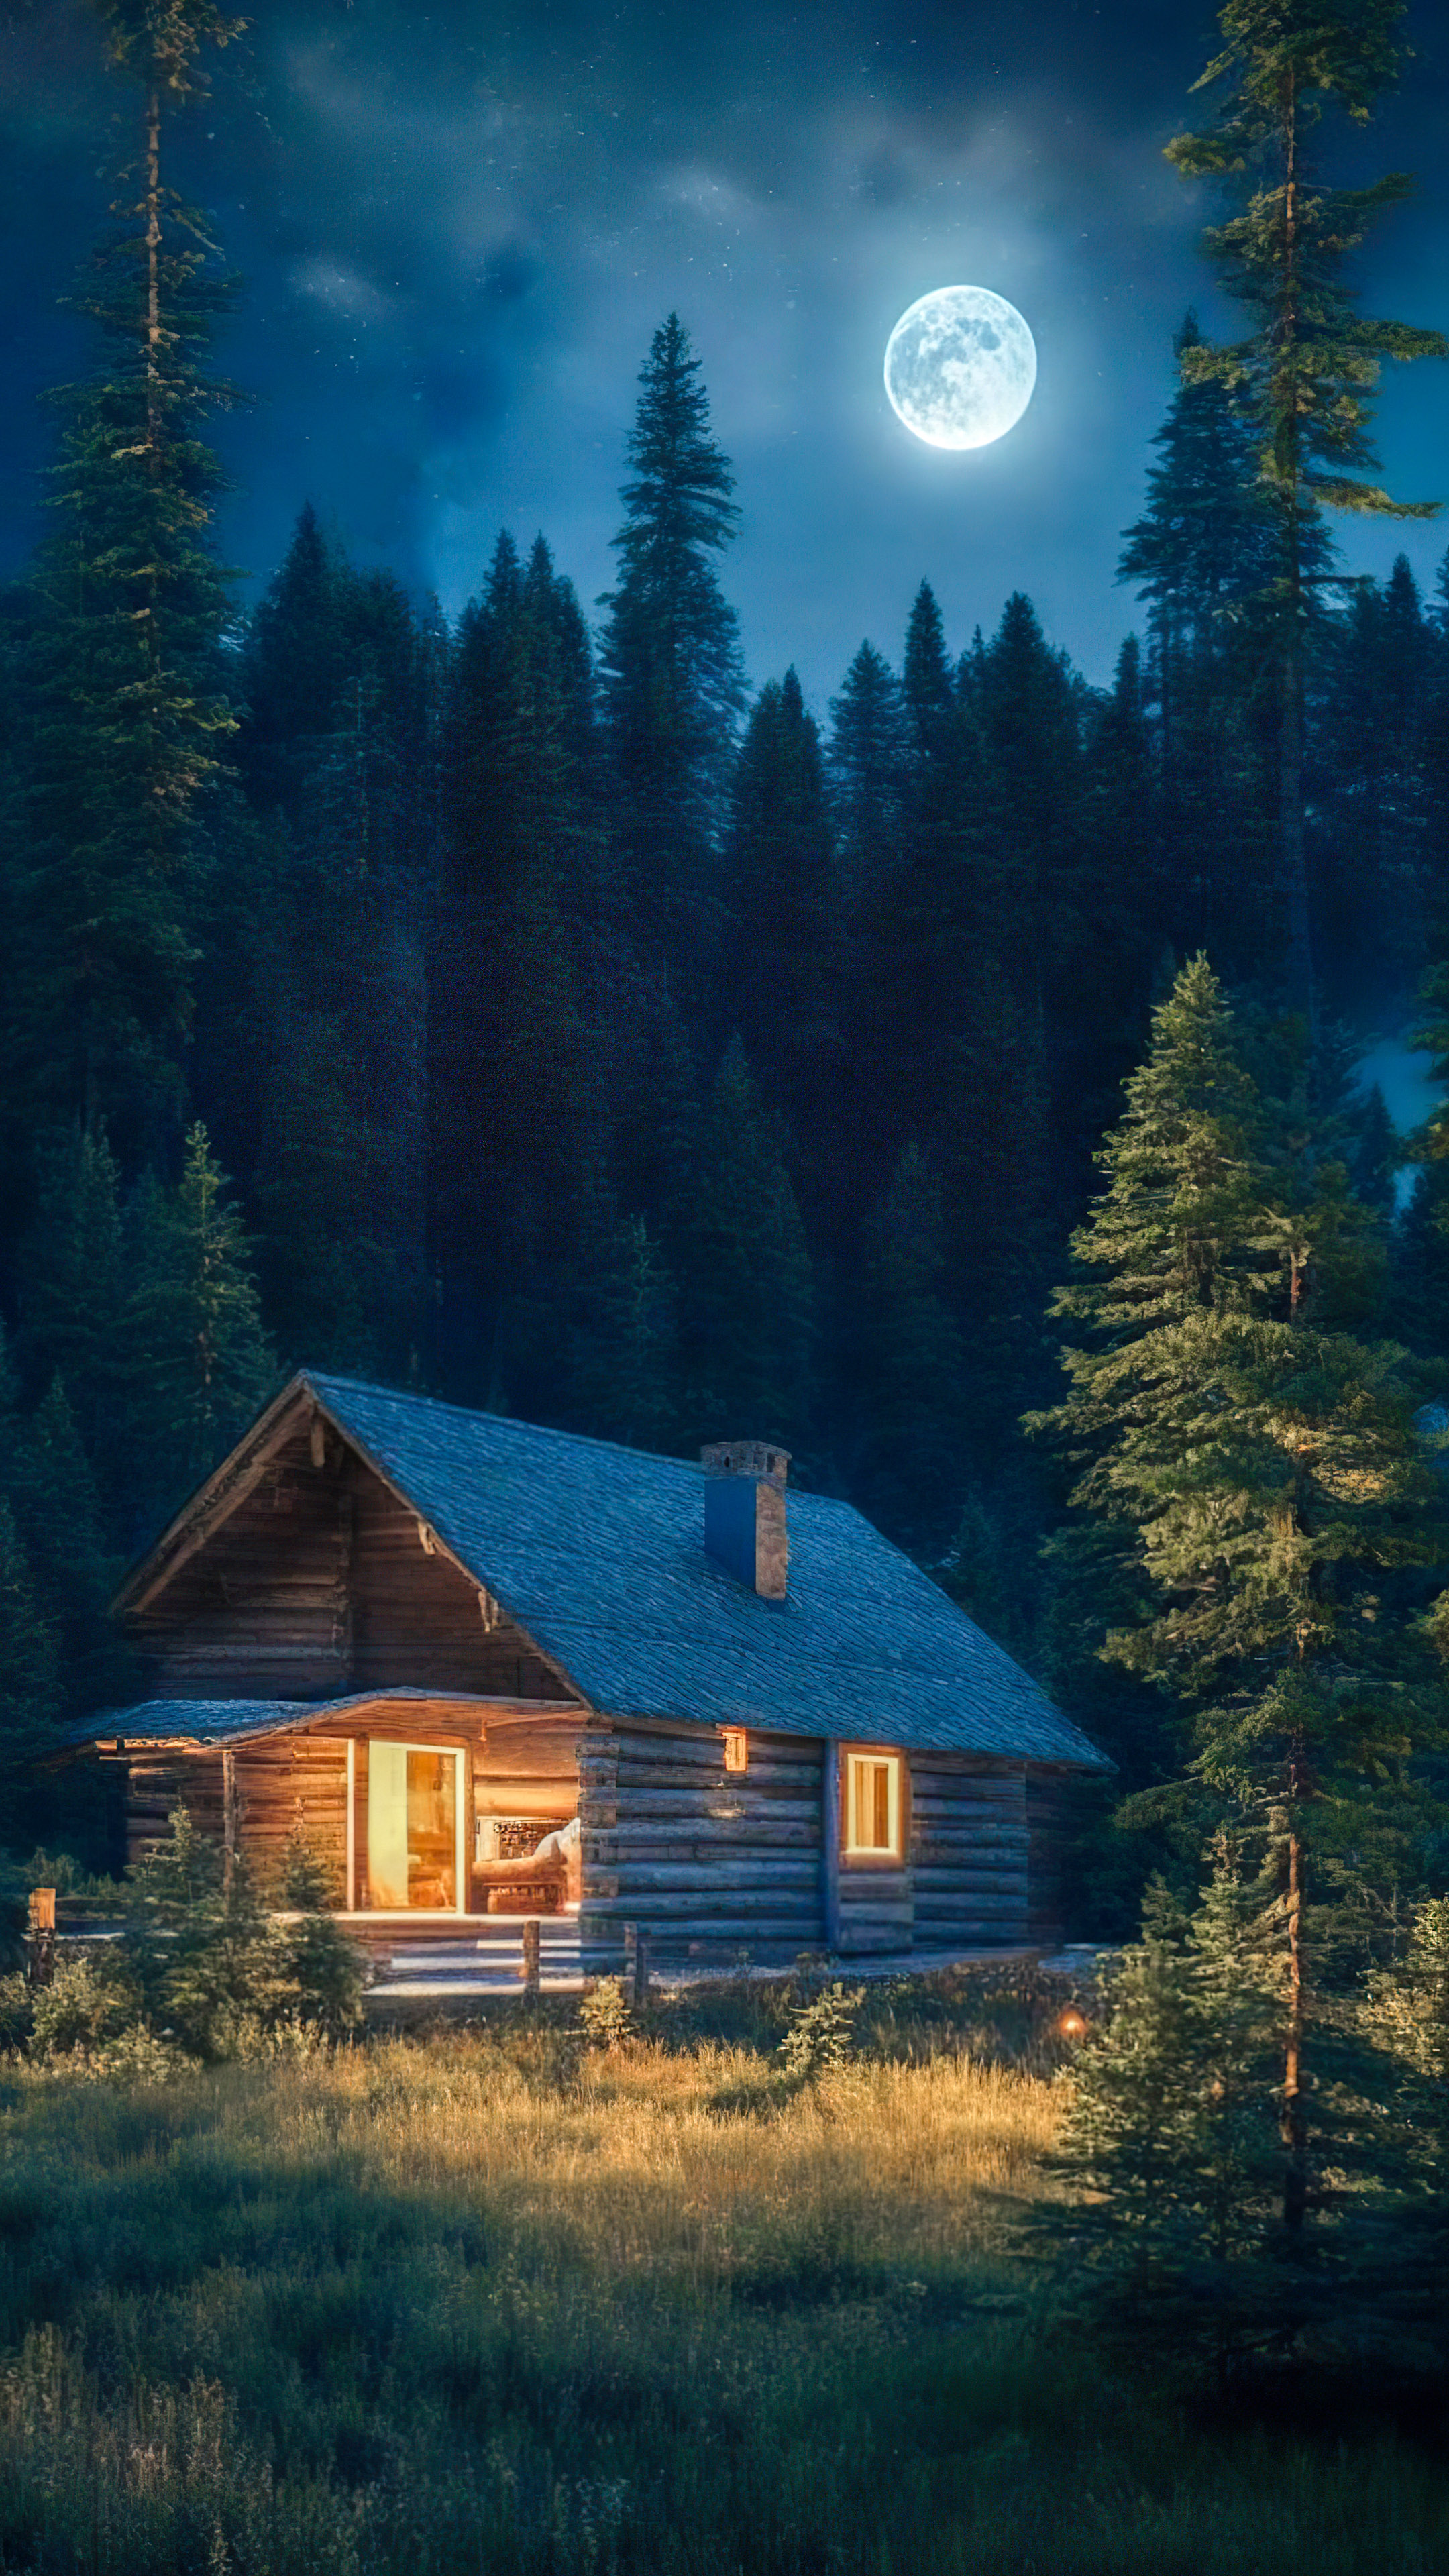 Embrassez la sérénité de notre fond d'écran nature de nuit, dépeignant une cabane confortable nichée parmi les pins, baignée dans la douce lumière d'une pleine lune.